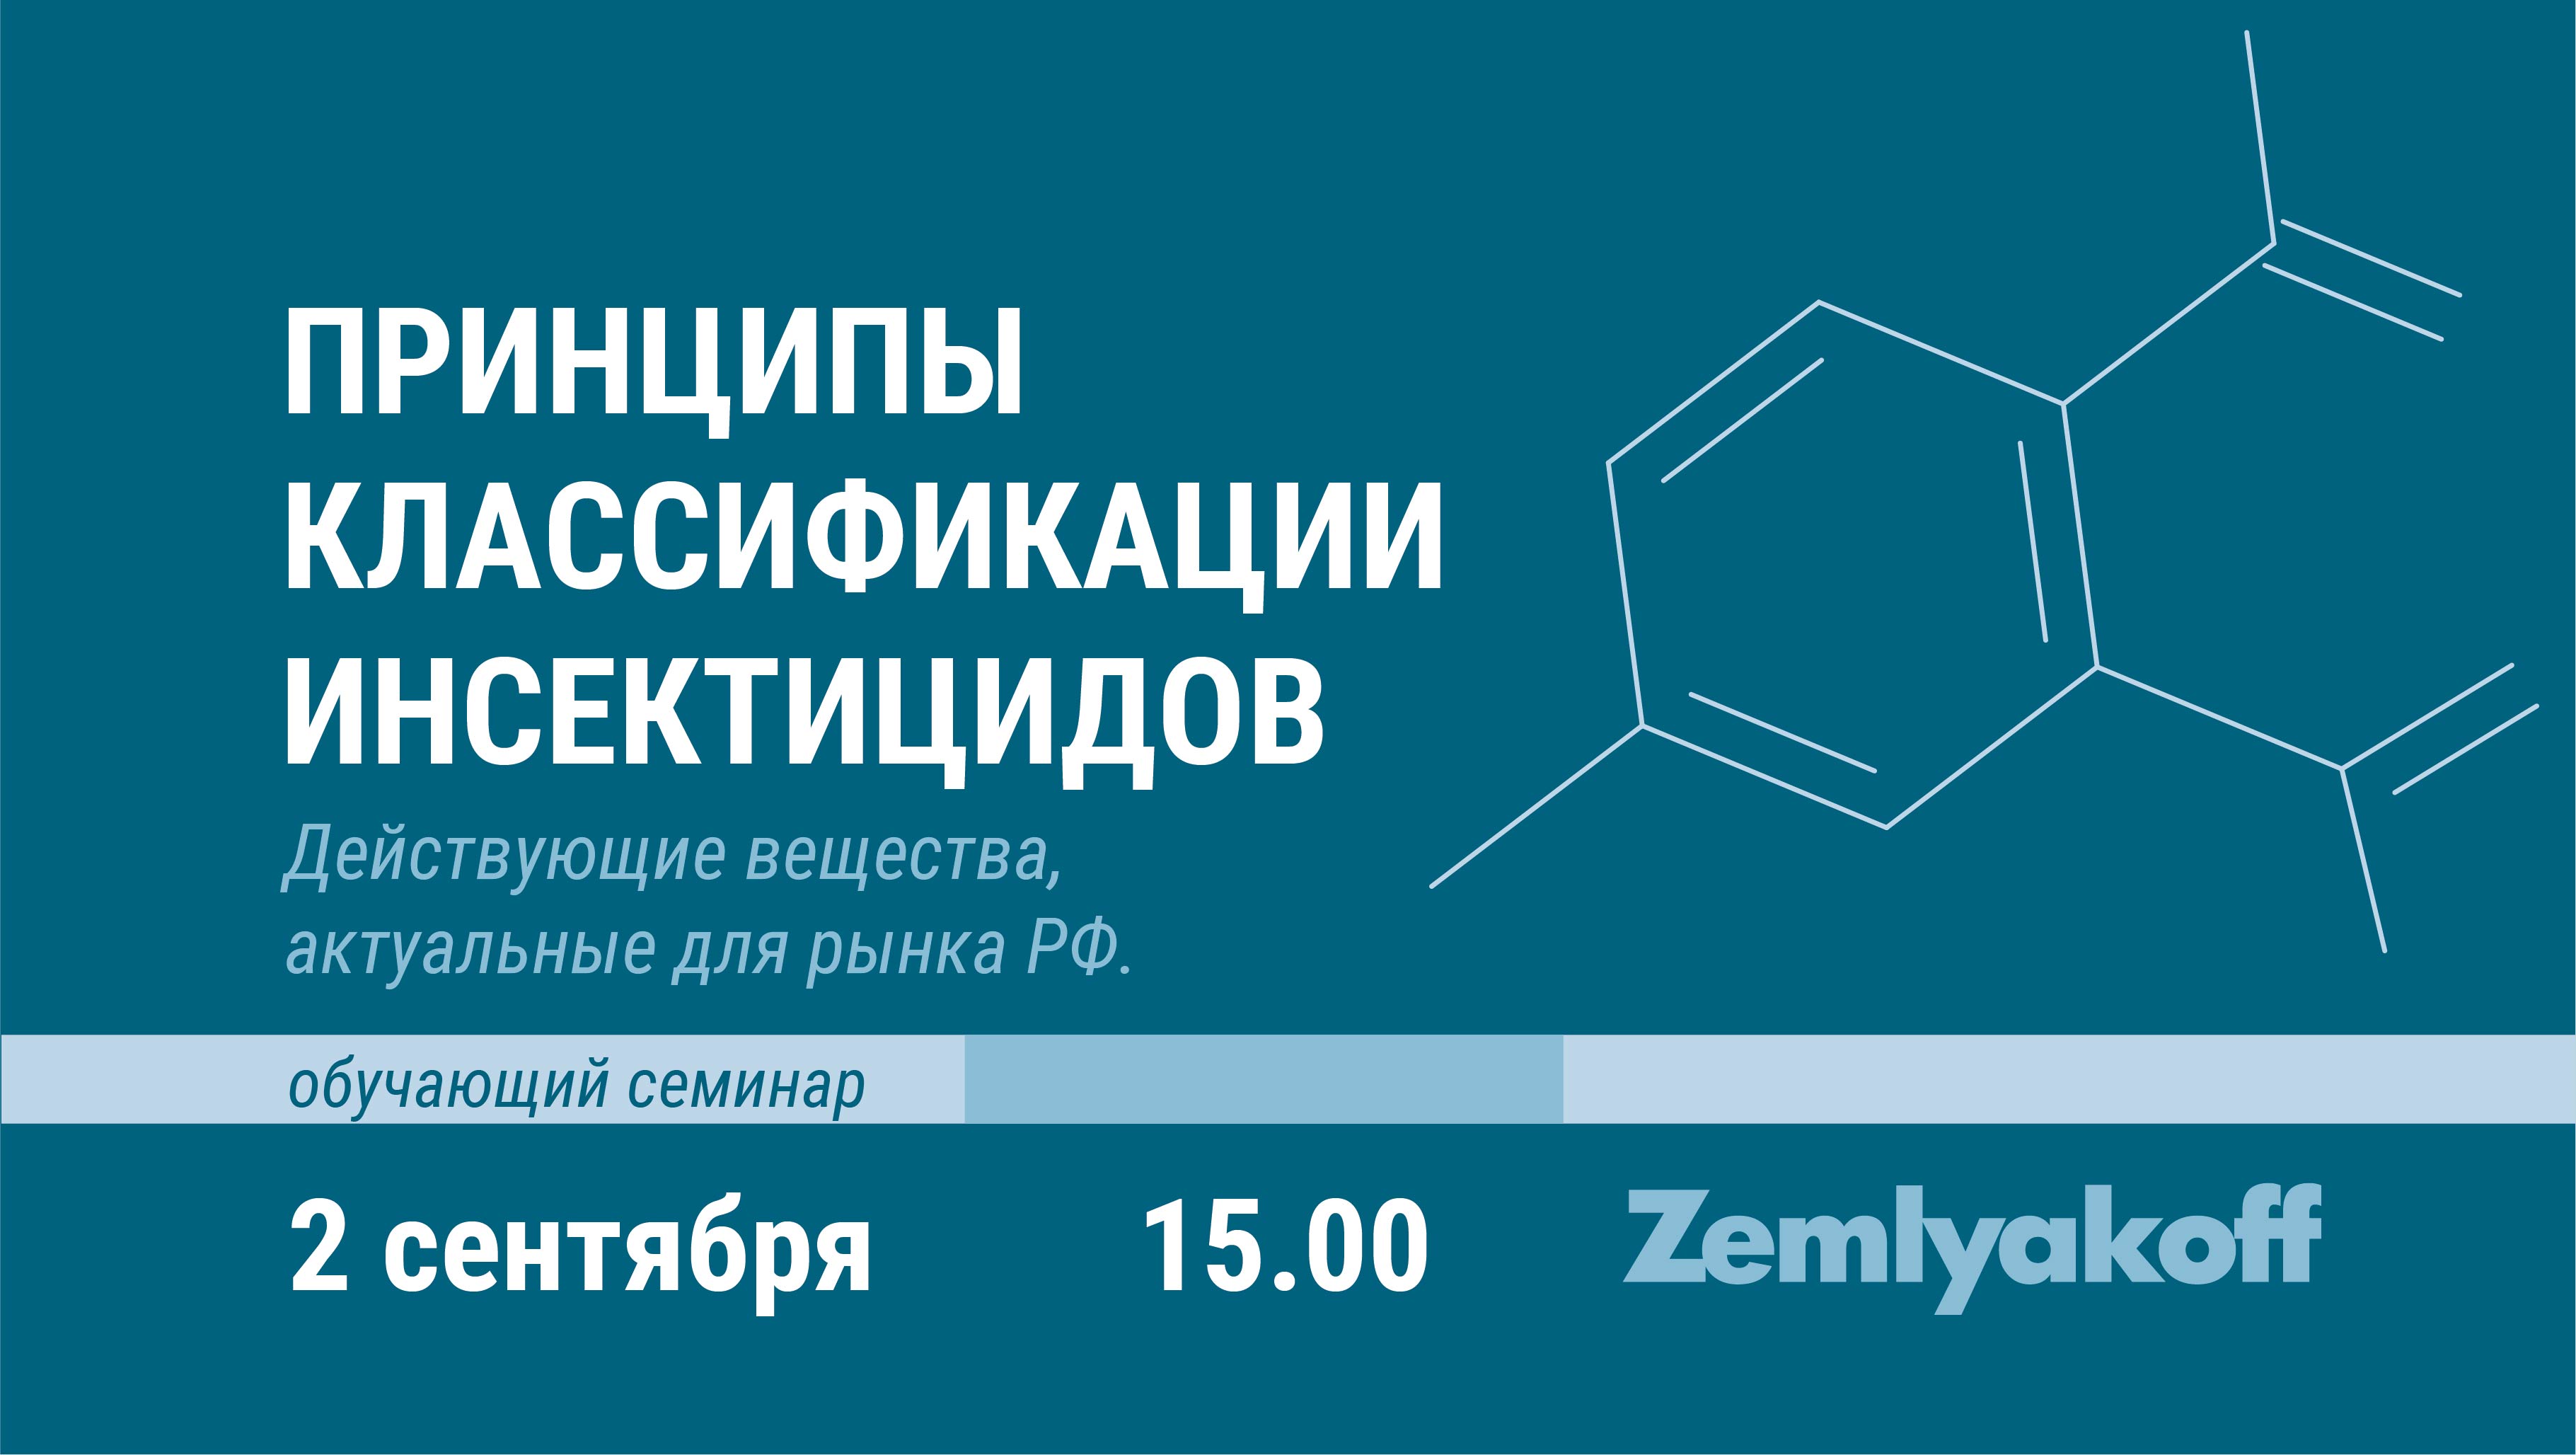 Приглашаем на онлайн-семинар "Принципы классификации инсектицидов. Действующие вещества, актуальные для рынка РФ".